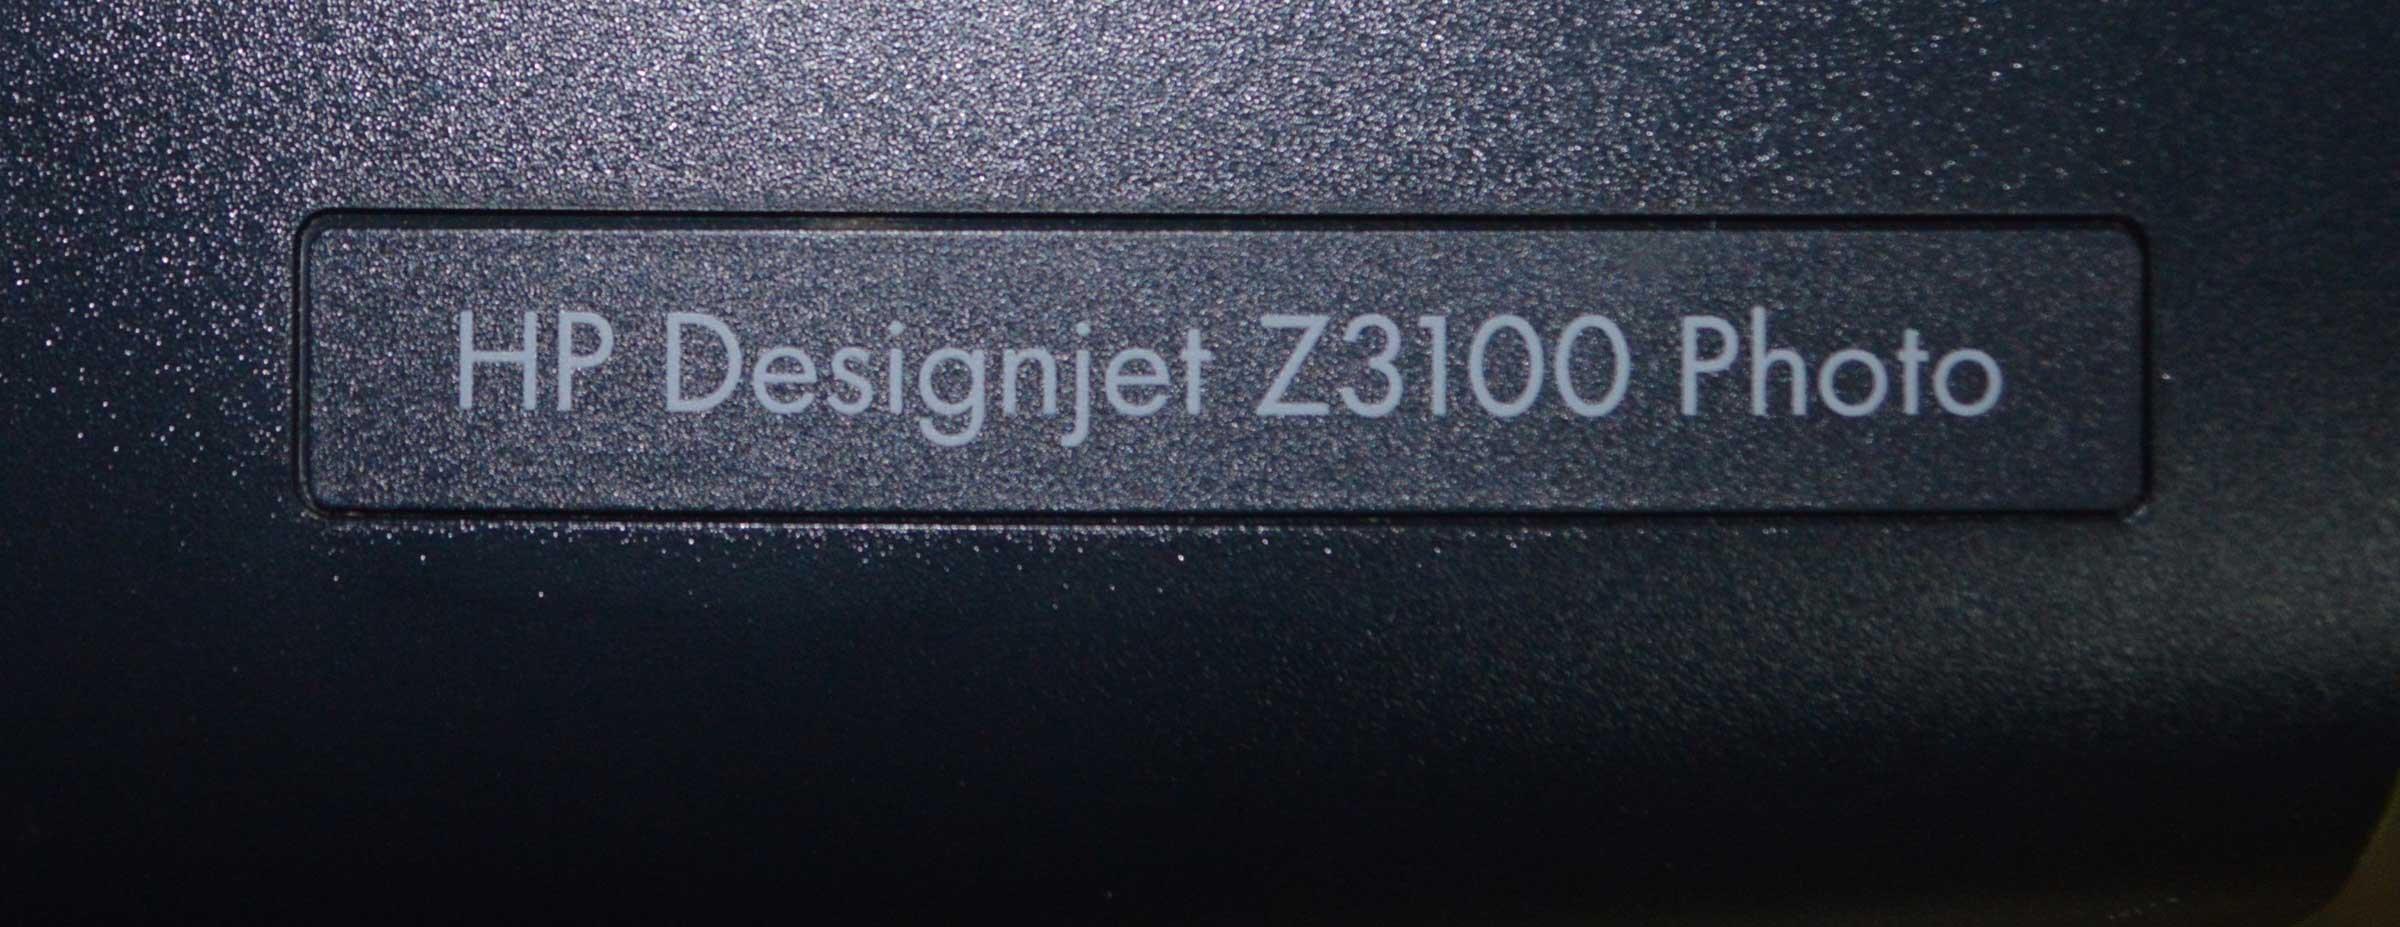 HP Design Jet Z3100 Photo Printer